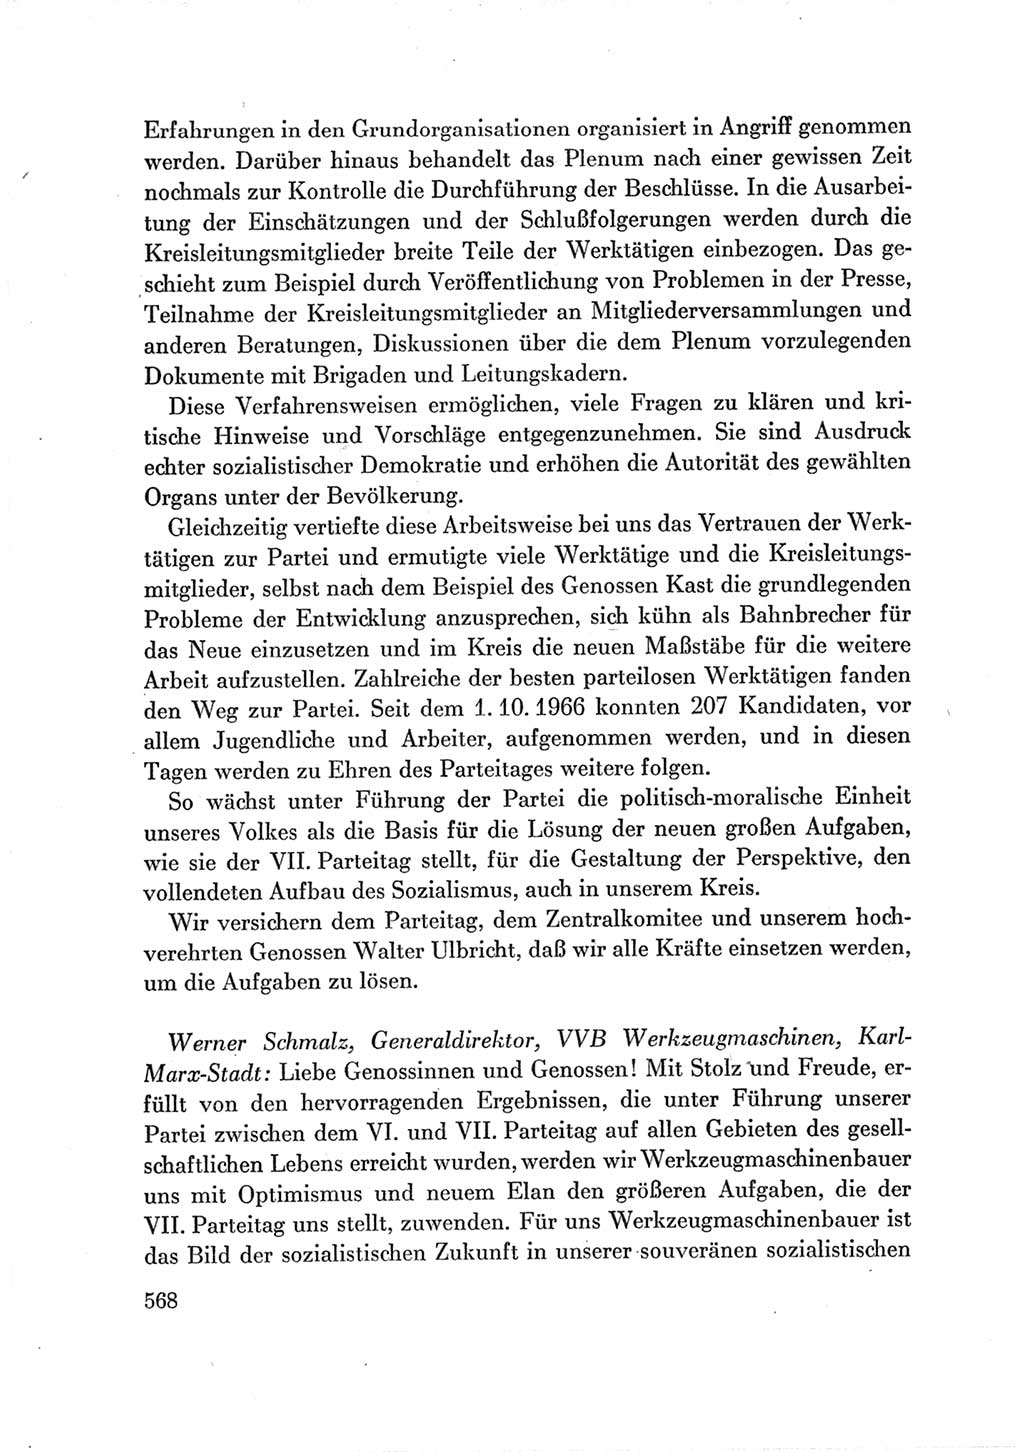 Protokoll der Verhandlungen des Ⅶ. Parteitages der Sozialistischen Einheitspartei Deutschlands (SED) [Deutsche Demokratische Republik (DDR)] 1967, Band Ⅲ, Seite 568 (Prot. Verh. Ⅶ. PT SED DDR 1967, Bd. Ⅲ, S. 568)